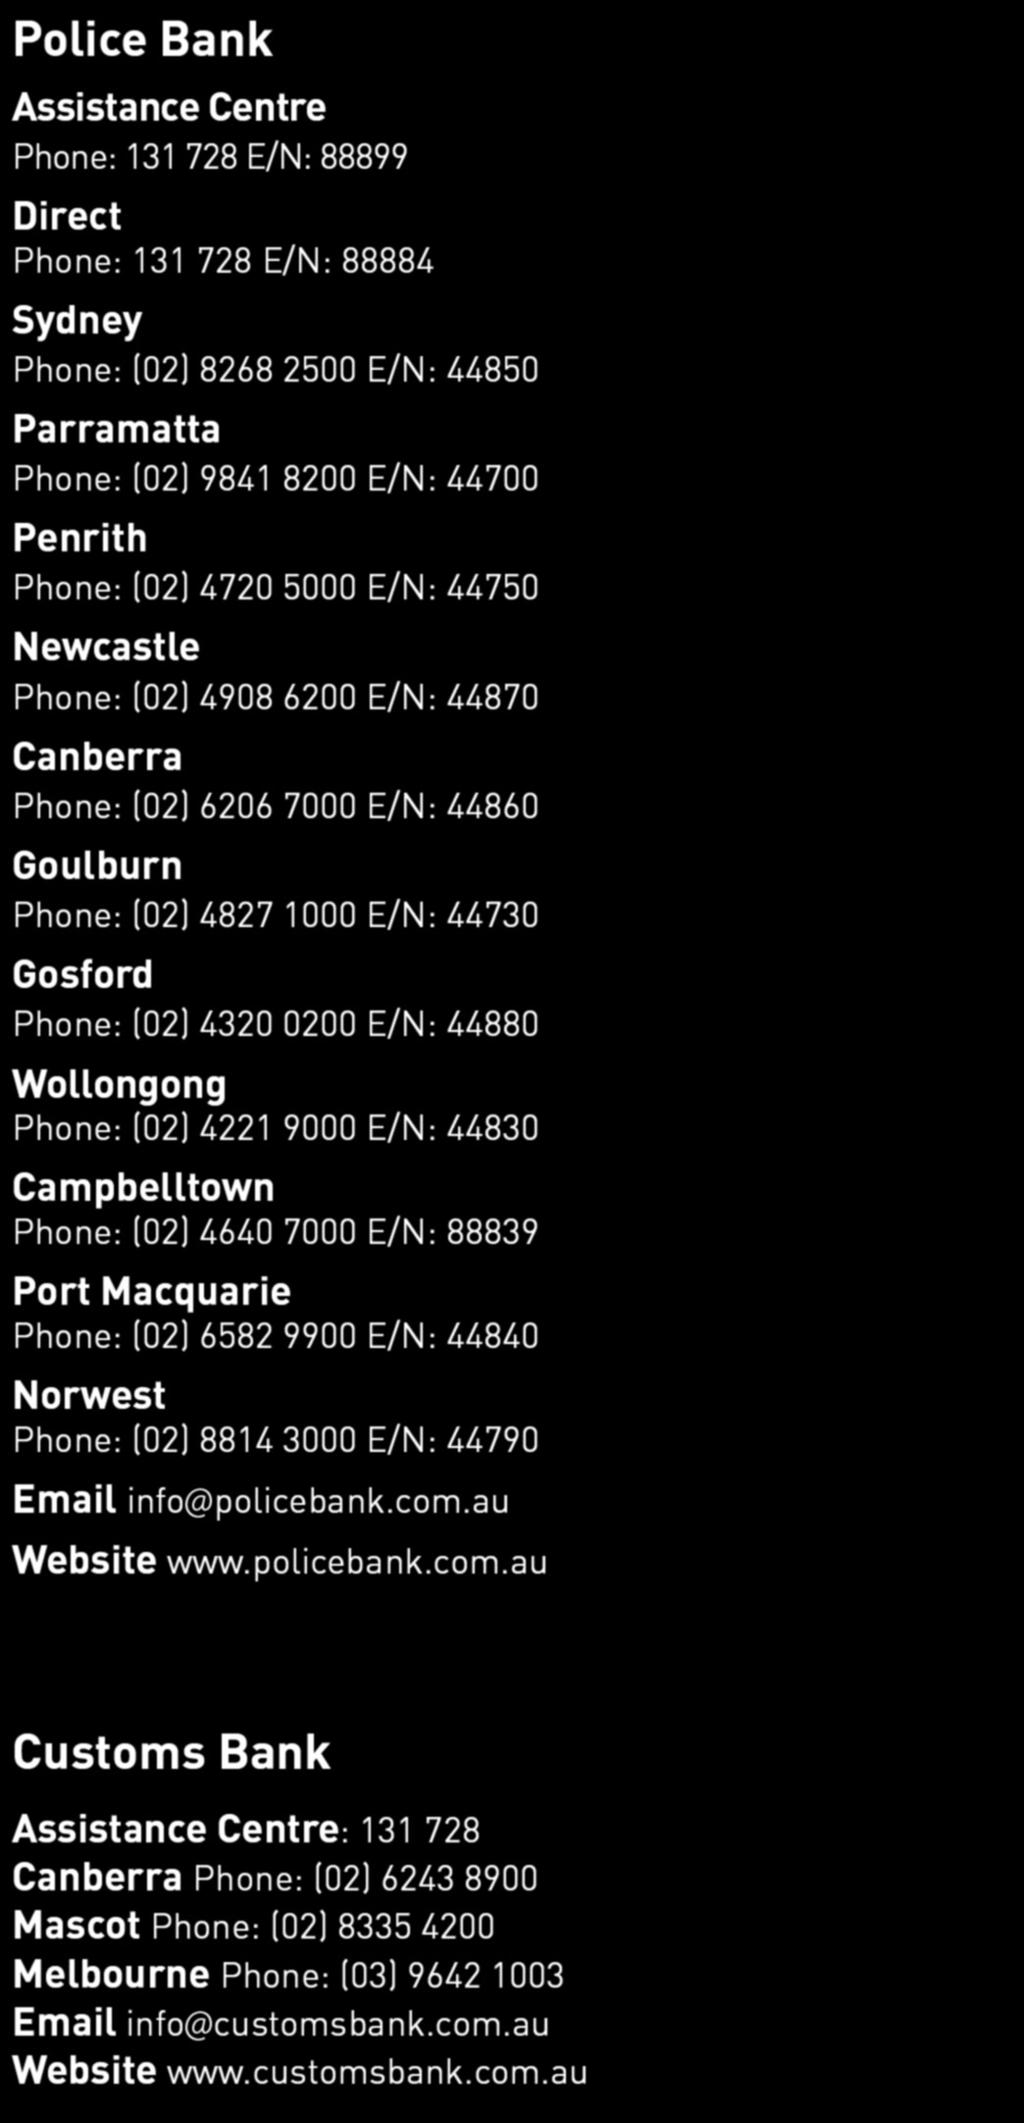 Wollongong Phone: (02) 4221 9000 E/N: 44830 Campbelltown Phone: (02) 4640 7000 E/N: 88839 Port Macquarie Phone: (02) 6582 9900 E/N: 44840 Norwest Phone: (02) 8814 3000 E/N: 44790 Email